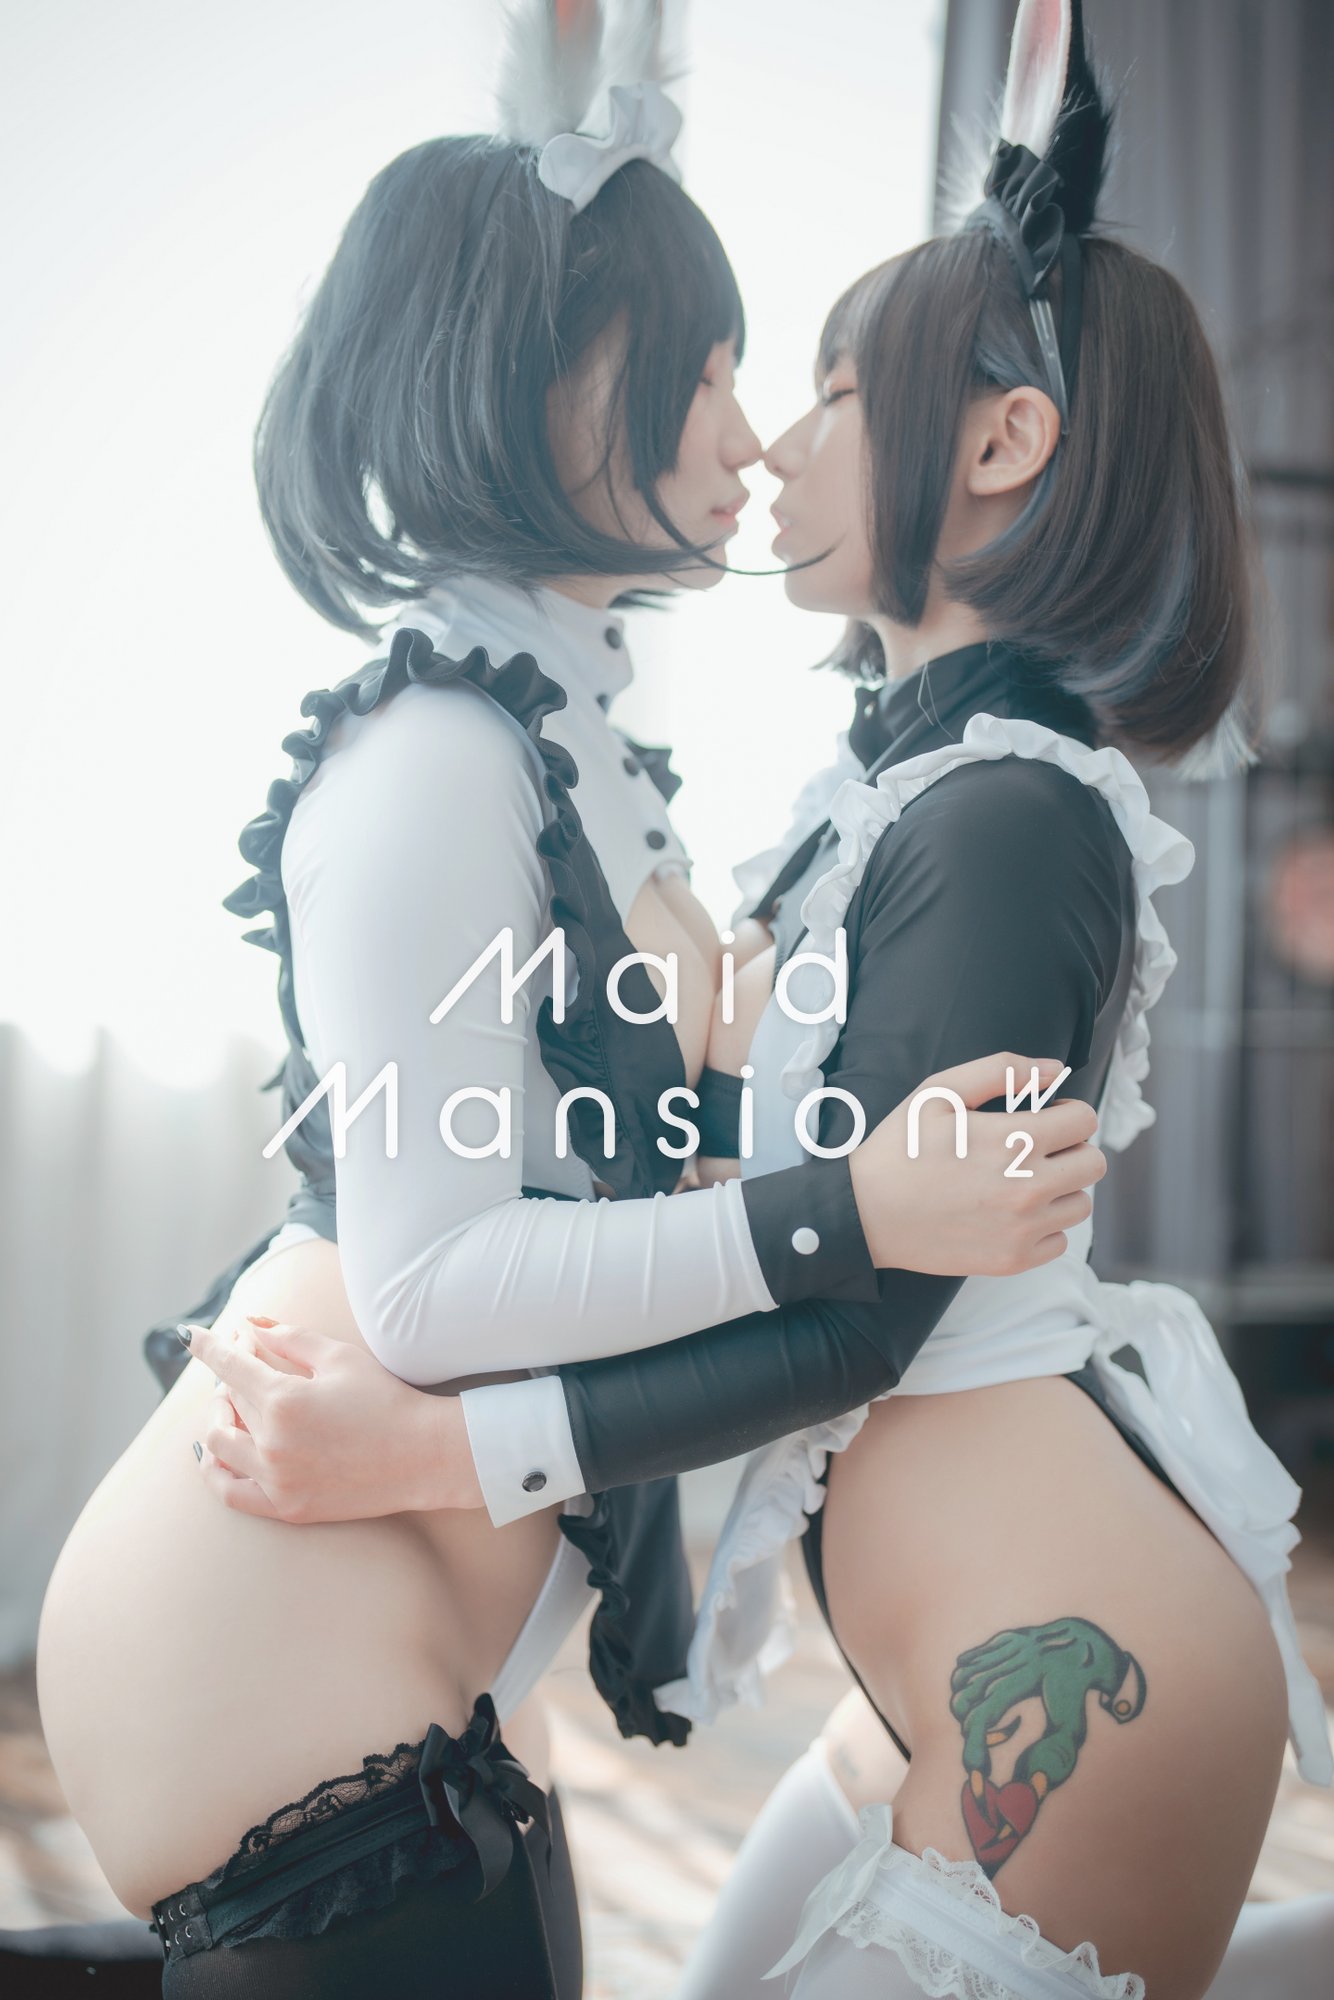 [DJAWA] Maruemon & Mimmi - Maid Mansion W² (Update HQ)